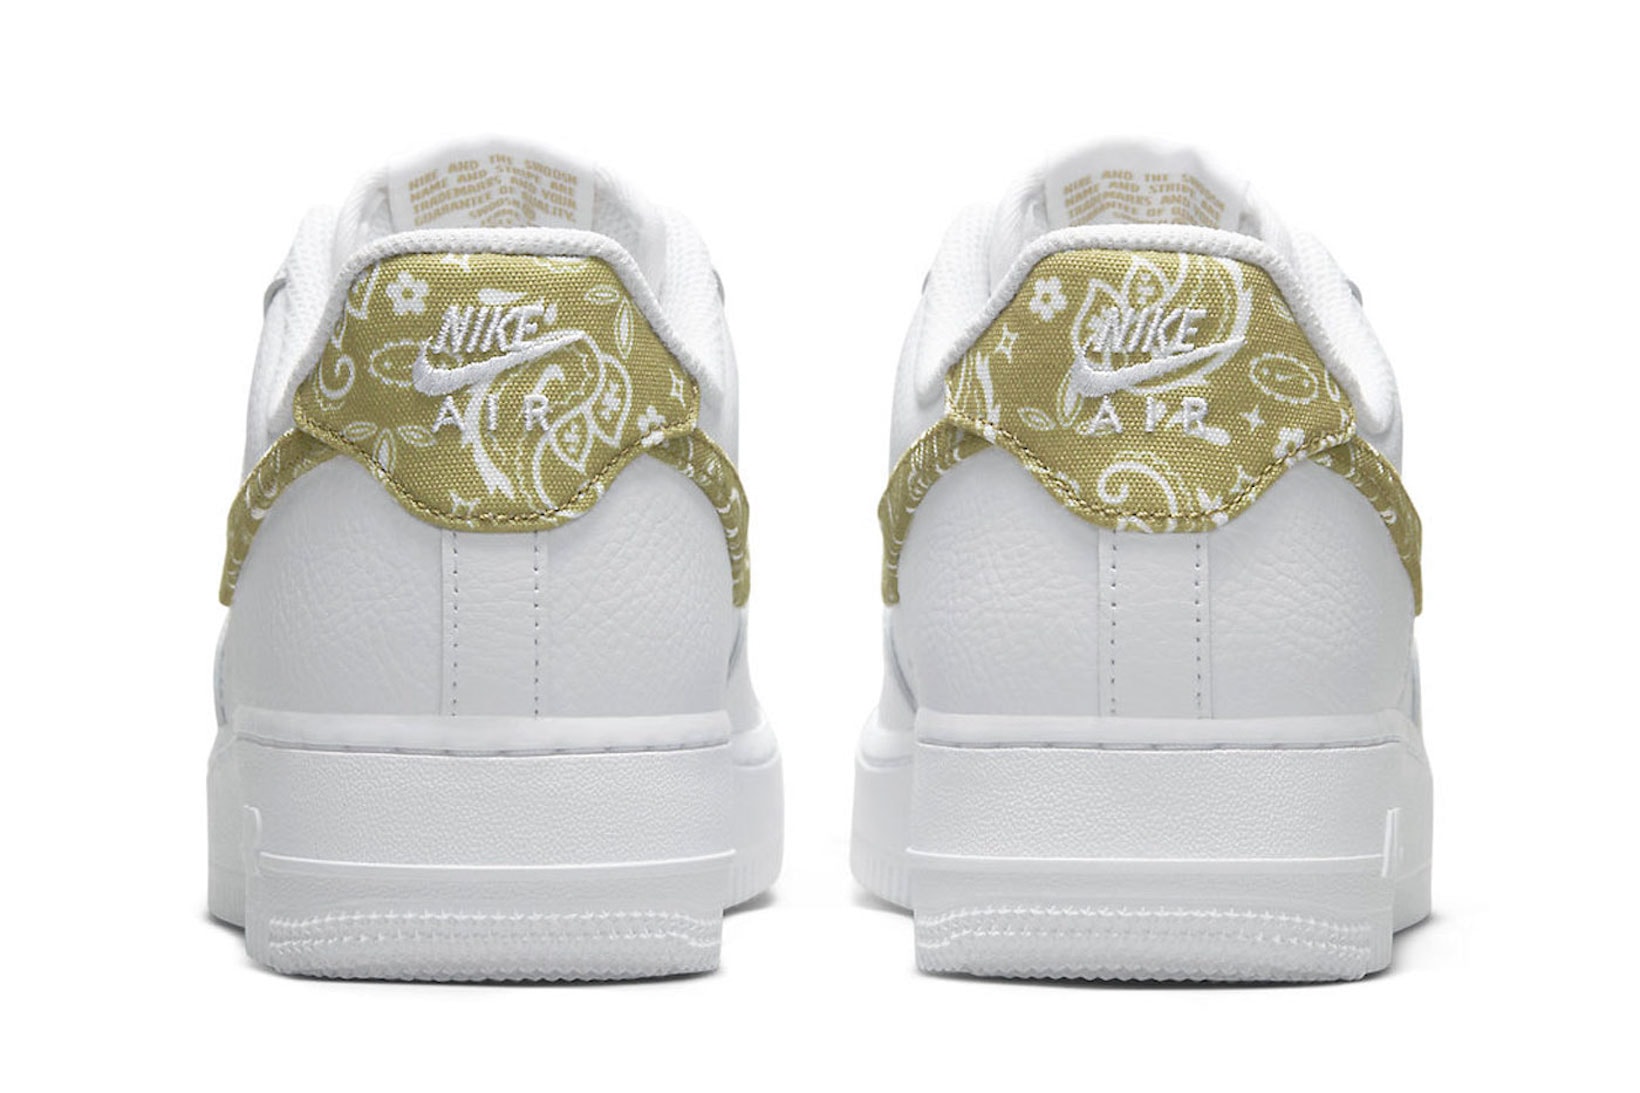 Nike Air Force 1 AF1 Olive Paisley White Sneakers Footwear Kicks